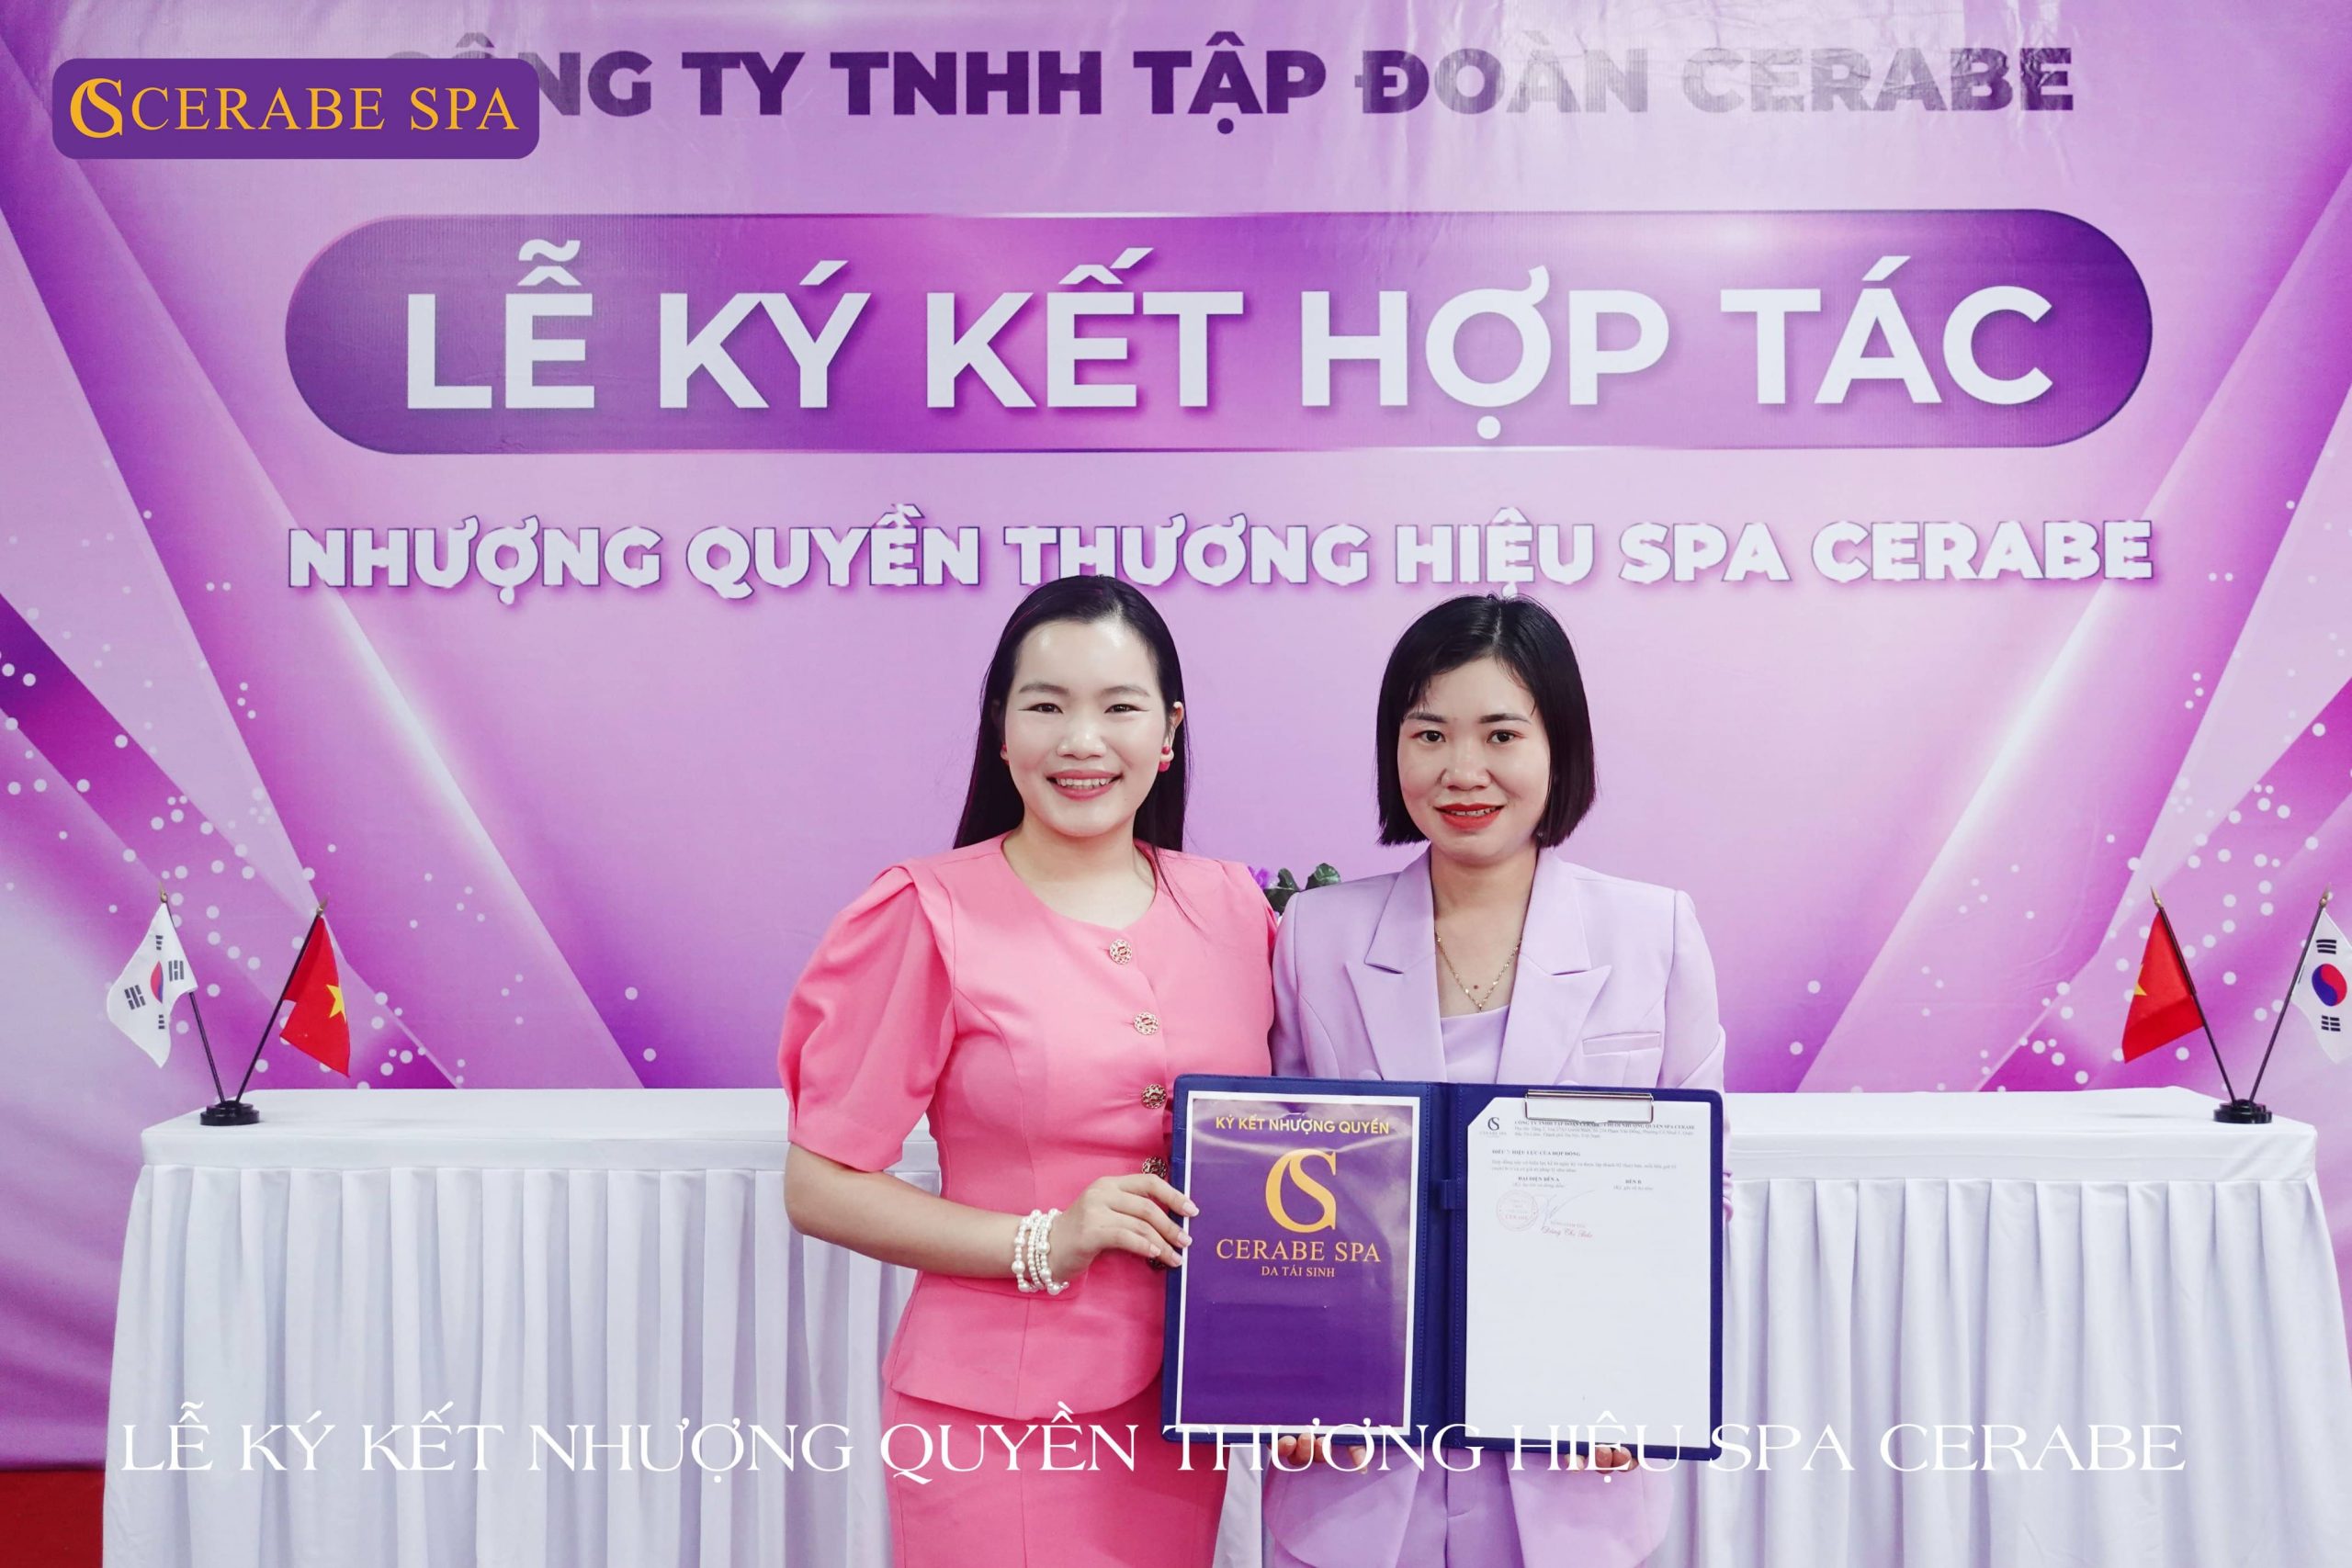 Chúc mừng chuyên gia Nguyễn Thị Ly chính thức trở thành tân giám đốc - Chủ 1 cơ sở Spa Cerabe